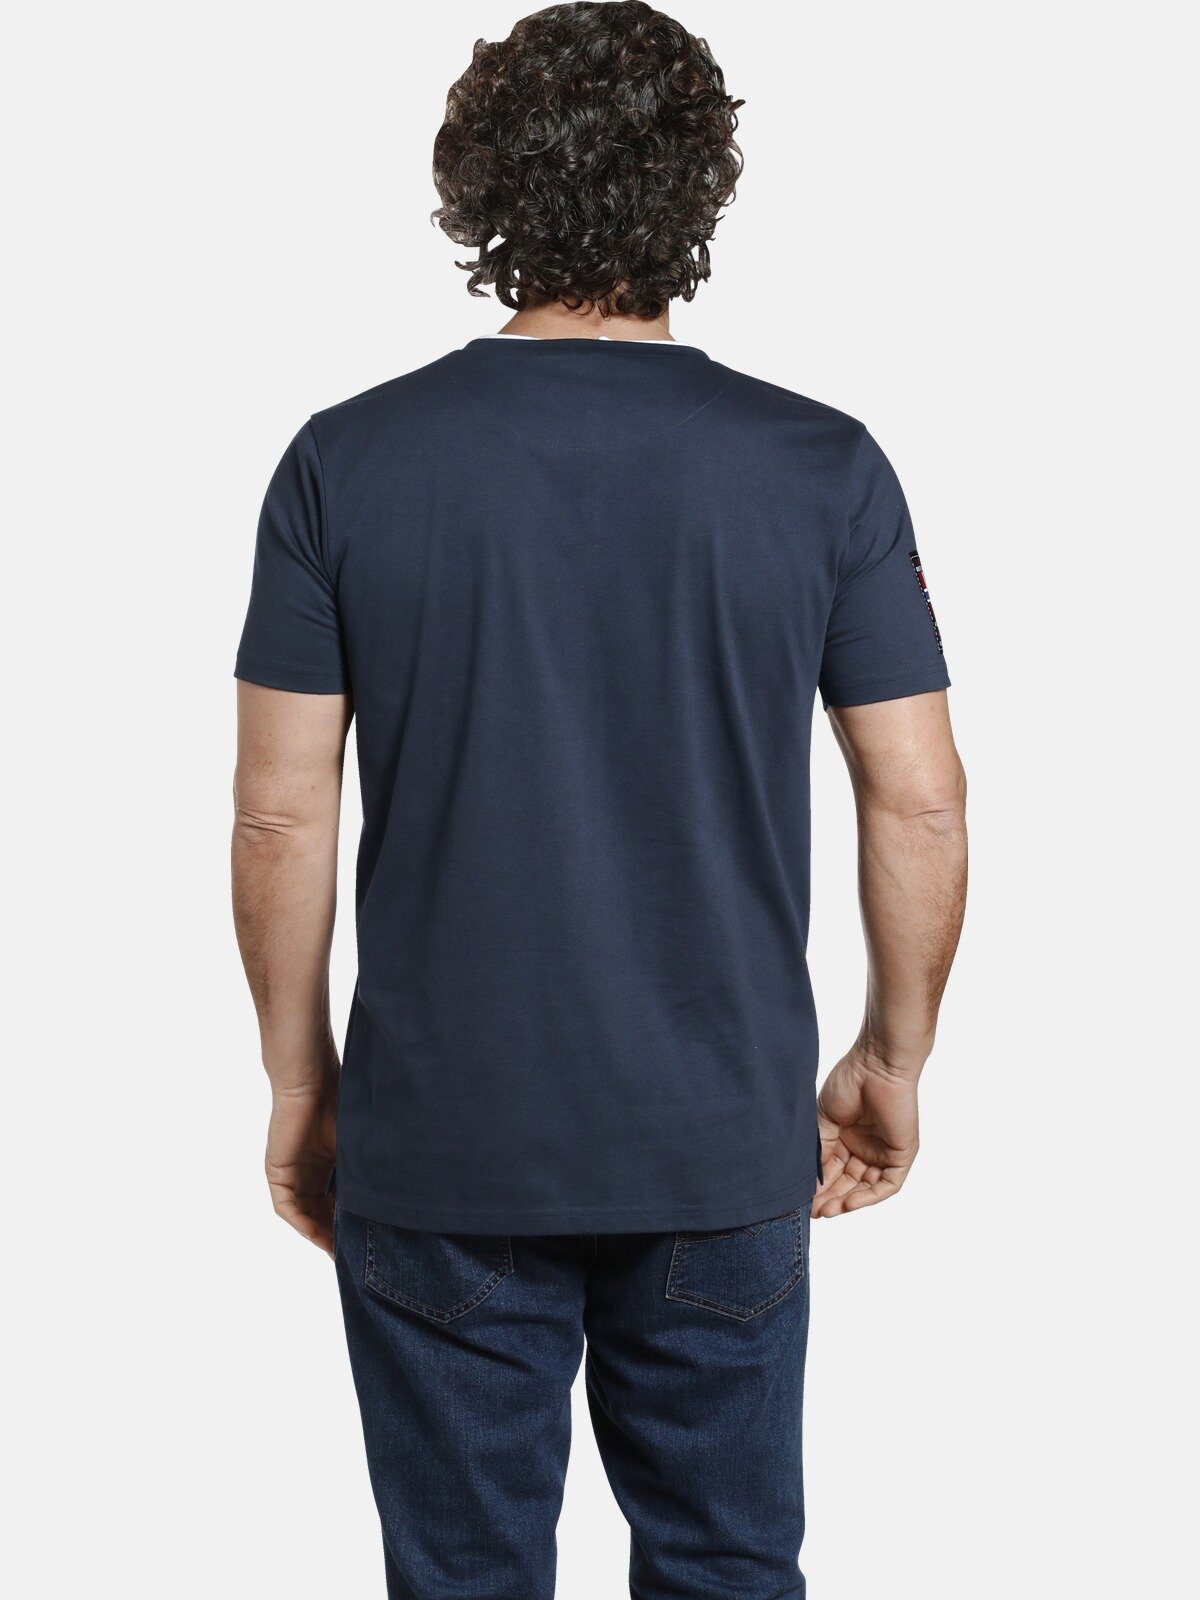 Jan Knopfleiste Vanderstorm mit PEDER dunkelblau 3-fach T-Shirt